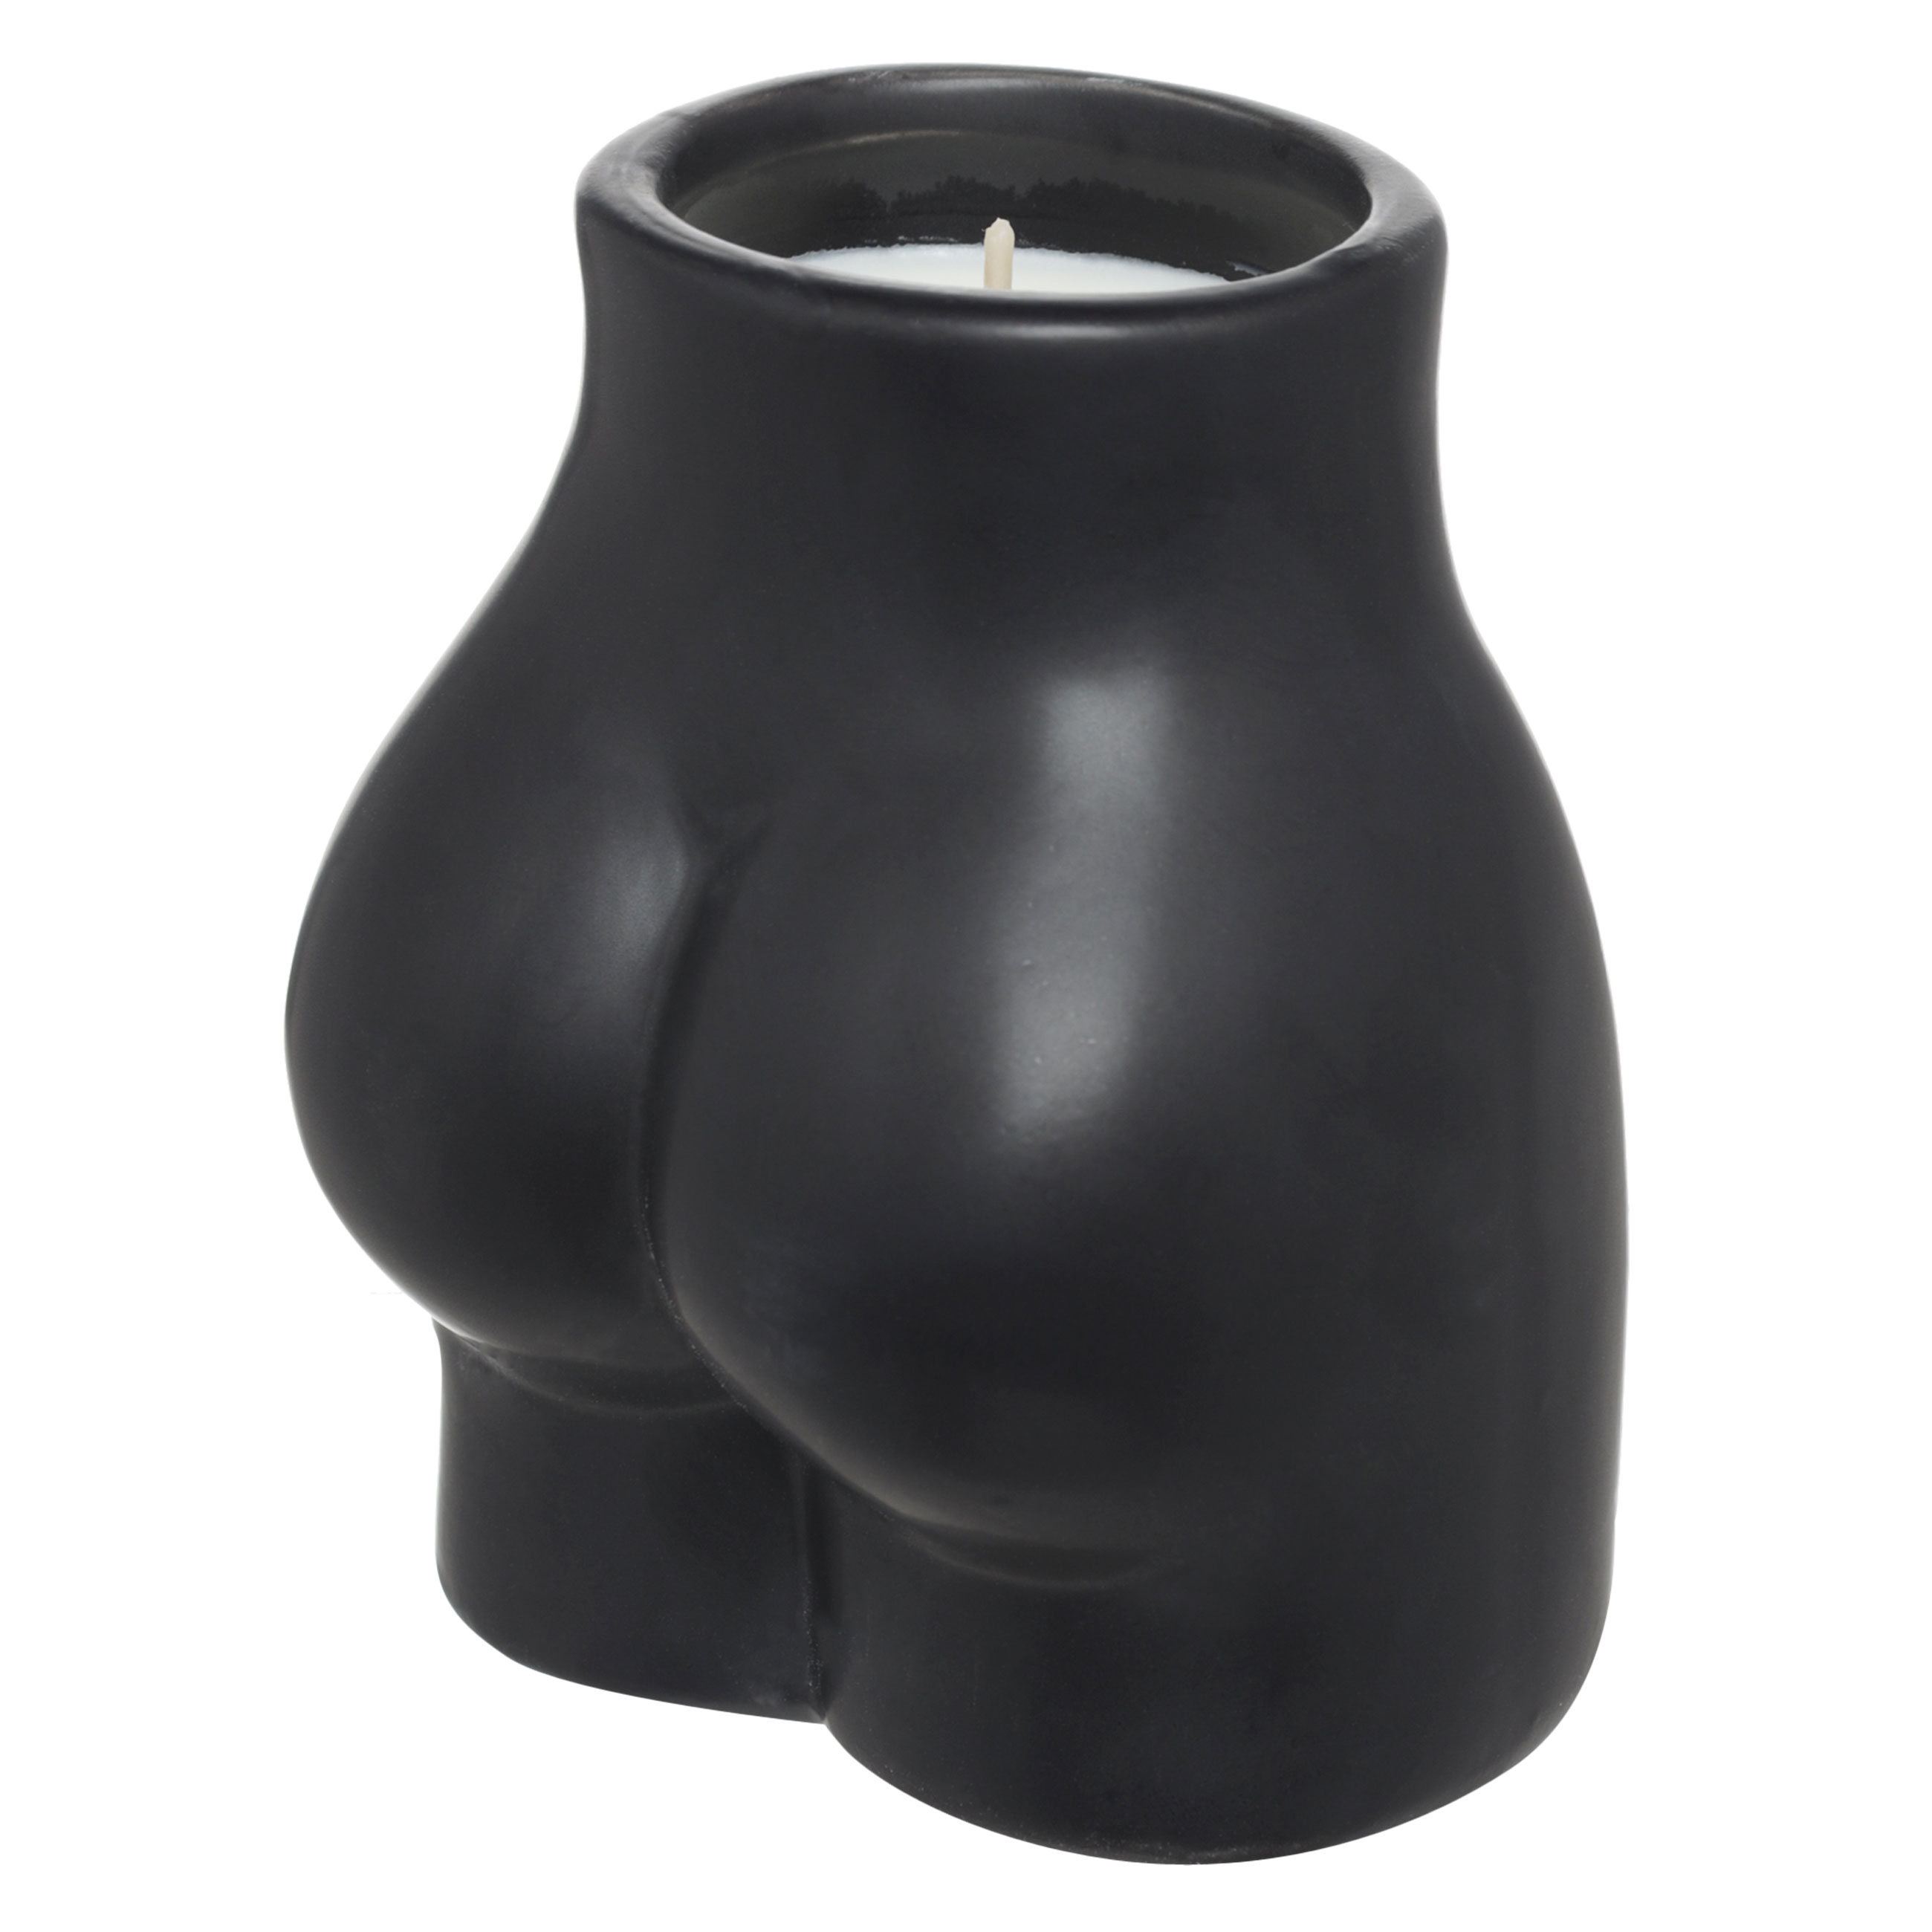 Свеча ароматическая, 10 см, в подсвечнике, керамика, черная, Mexico Orange Blossom, Face изображение № 2